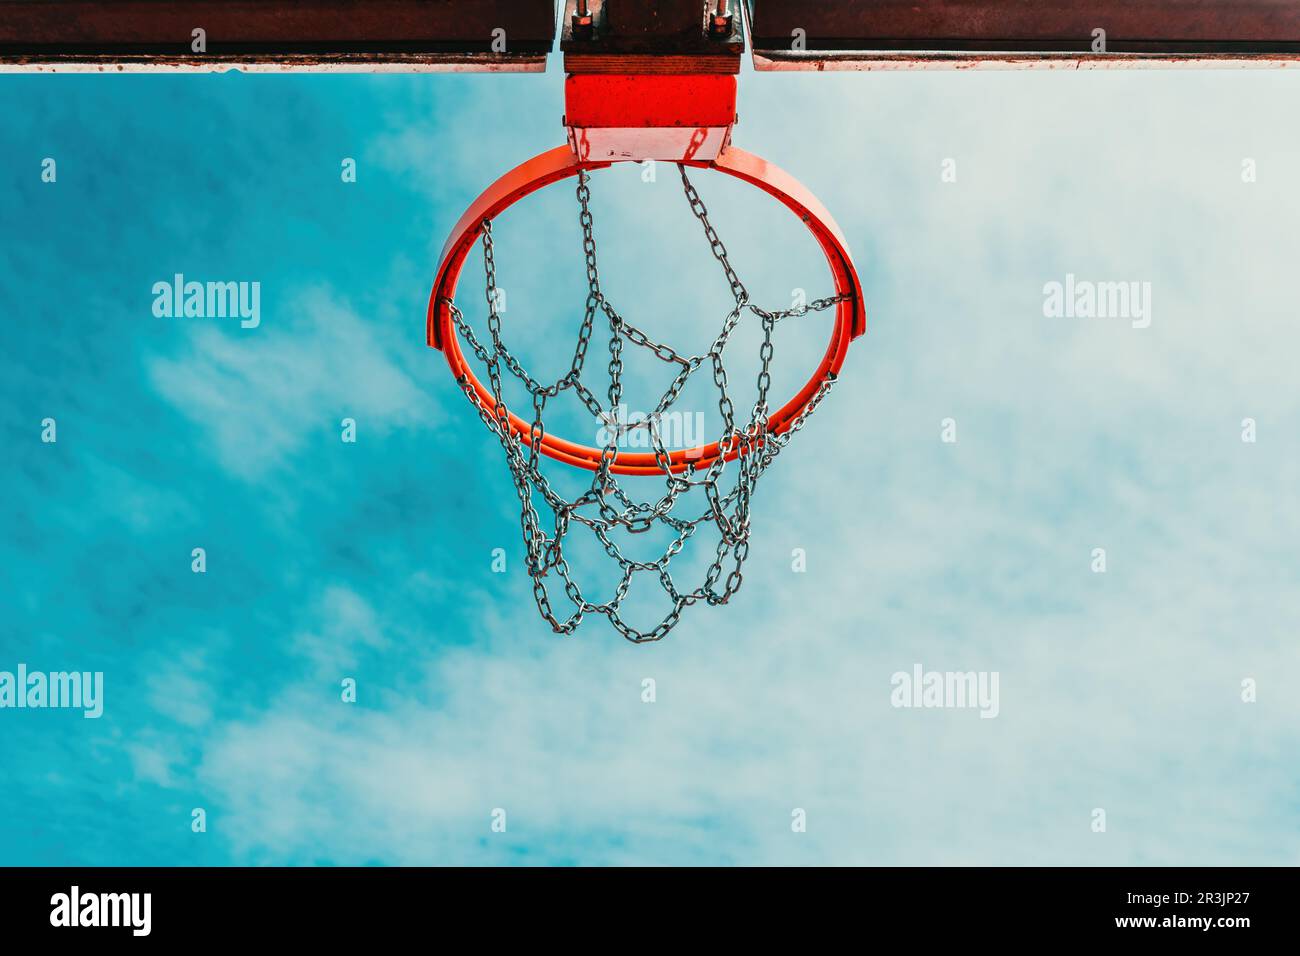 Vue en contre-angle d'un panier de basket-ball extérieur avec filet à chaîne  contre le ciel d'été Photo Stock - Alamy